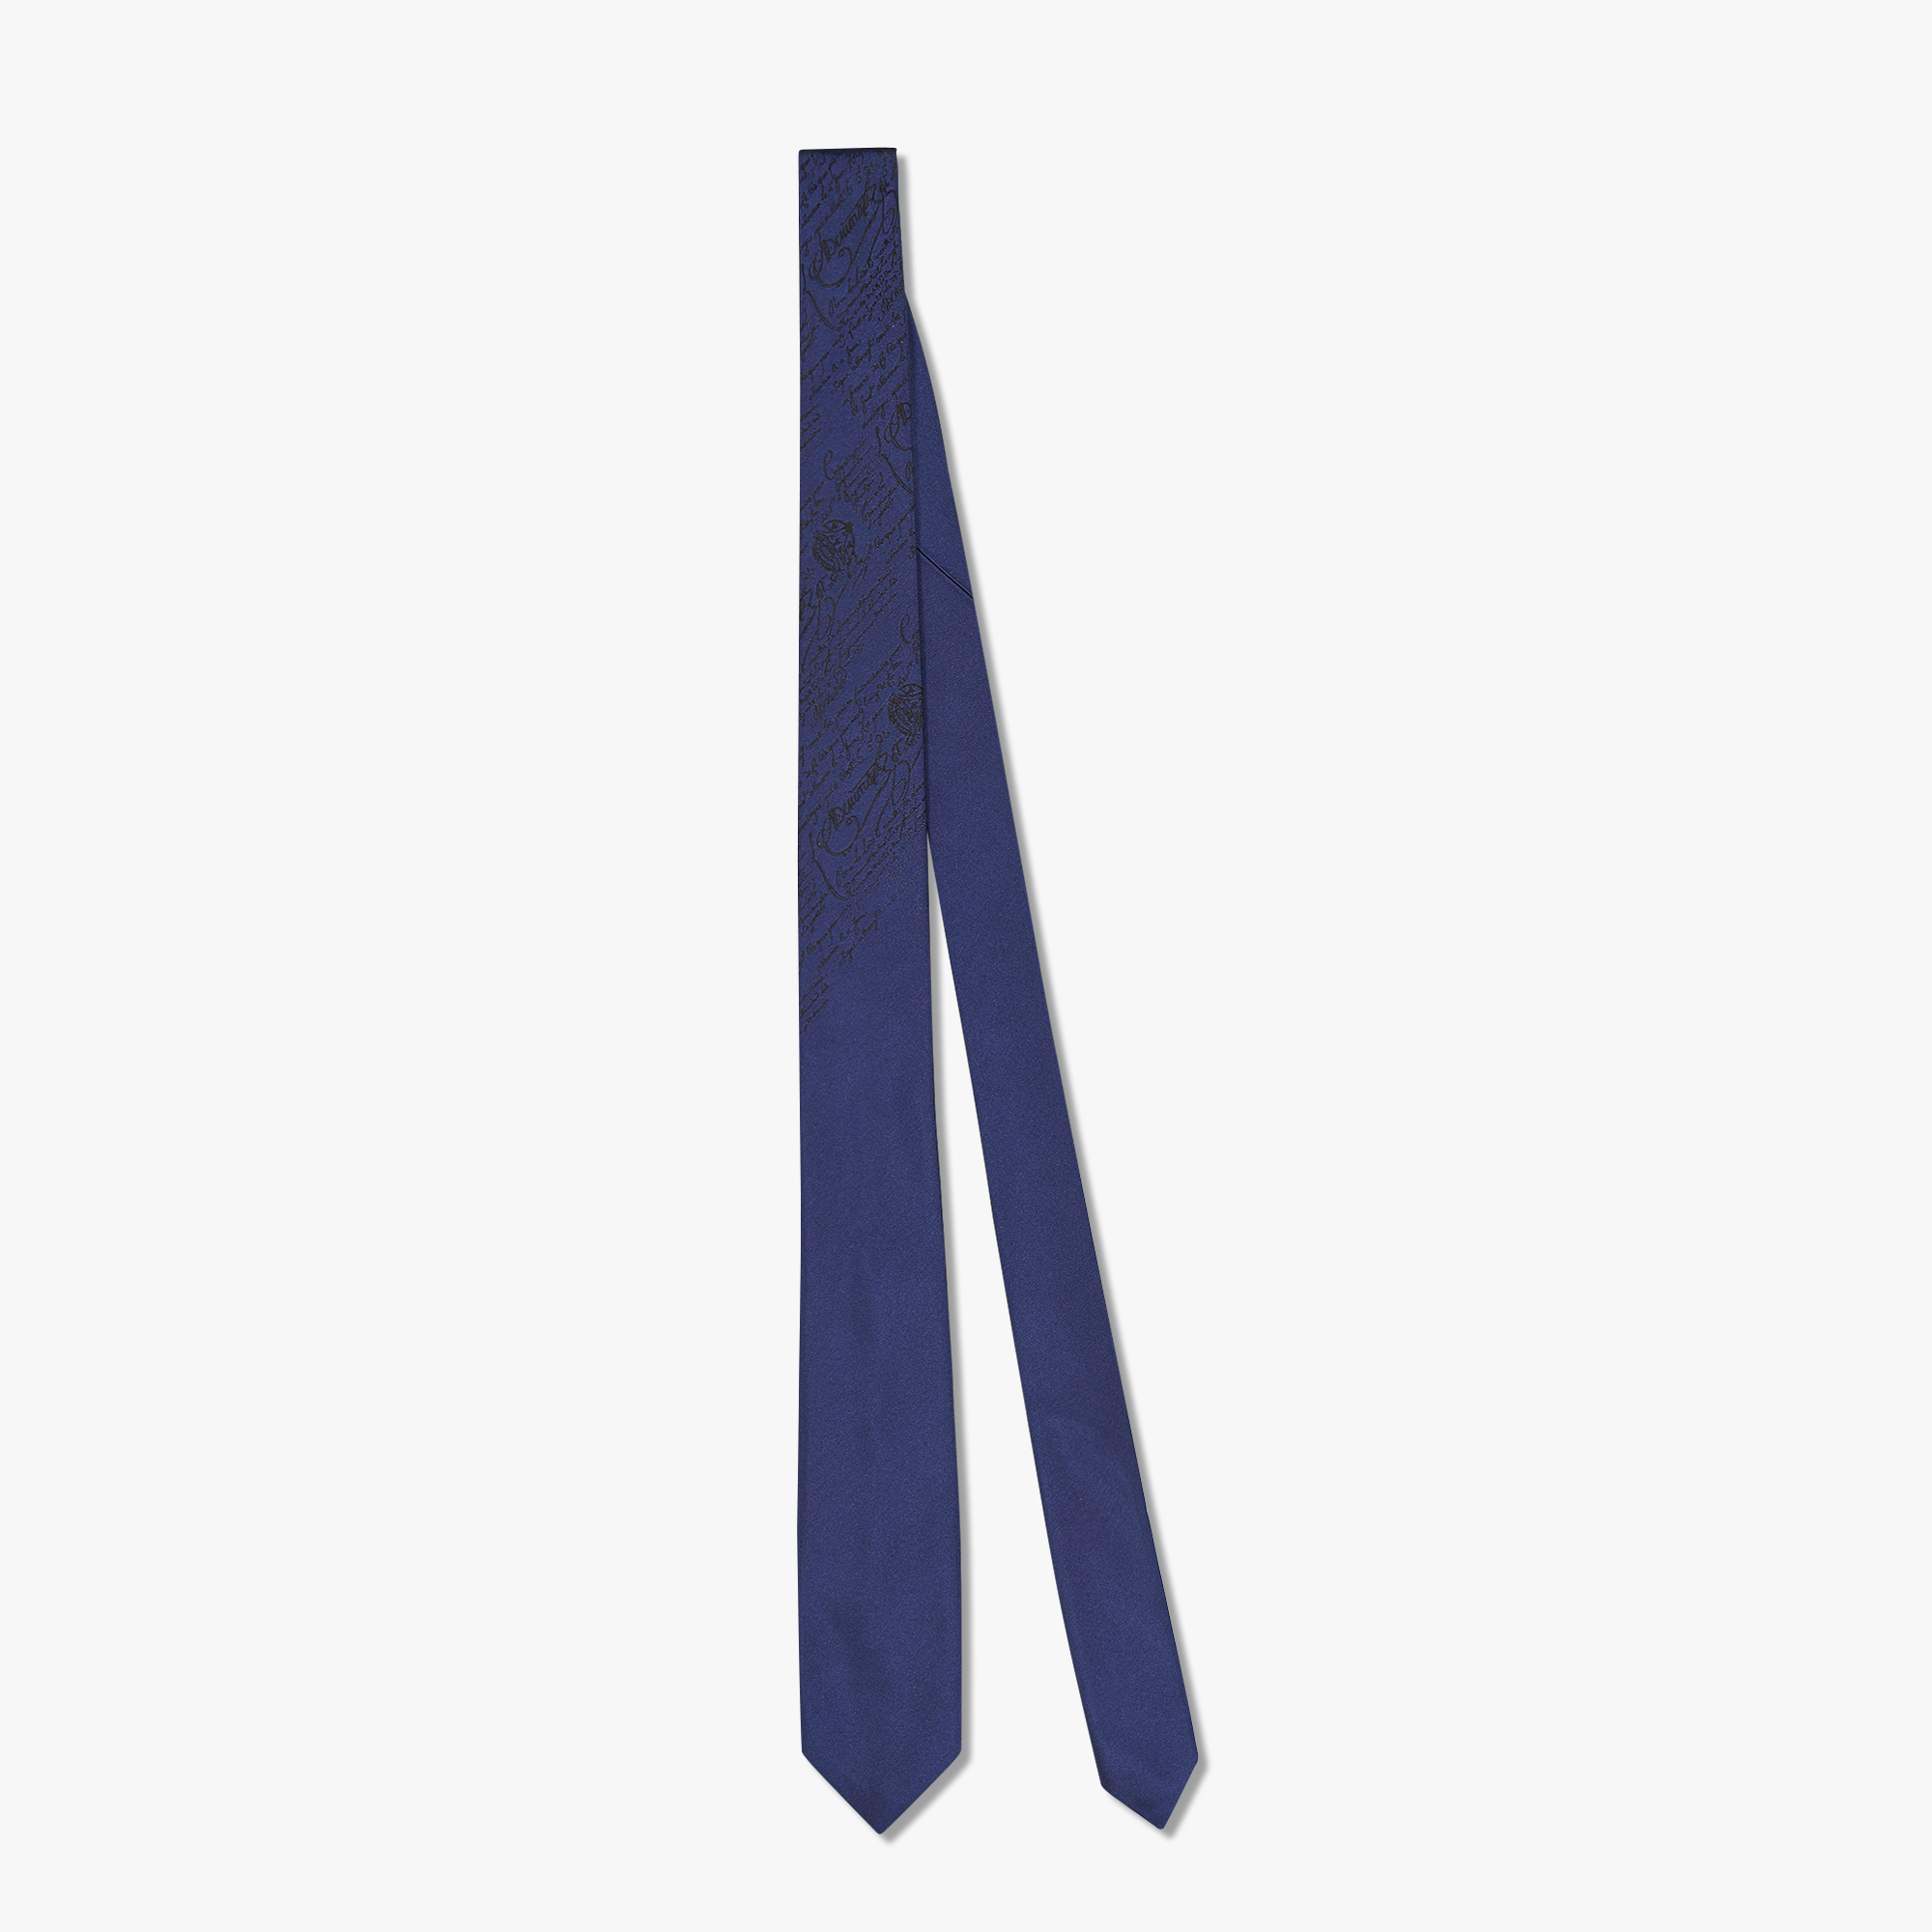  6 cm Jacquard Scritto Silk Tie, INFINITY BLUE, hi-res